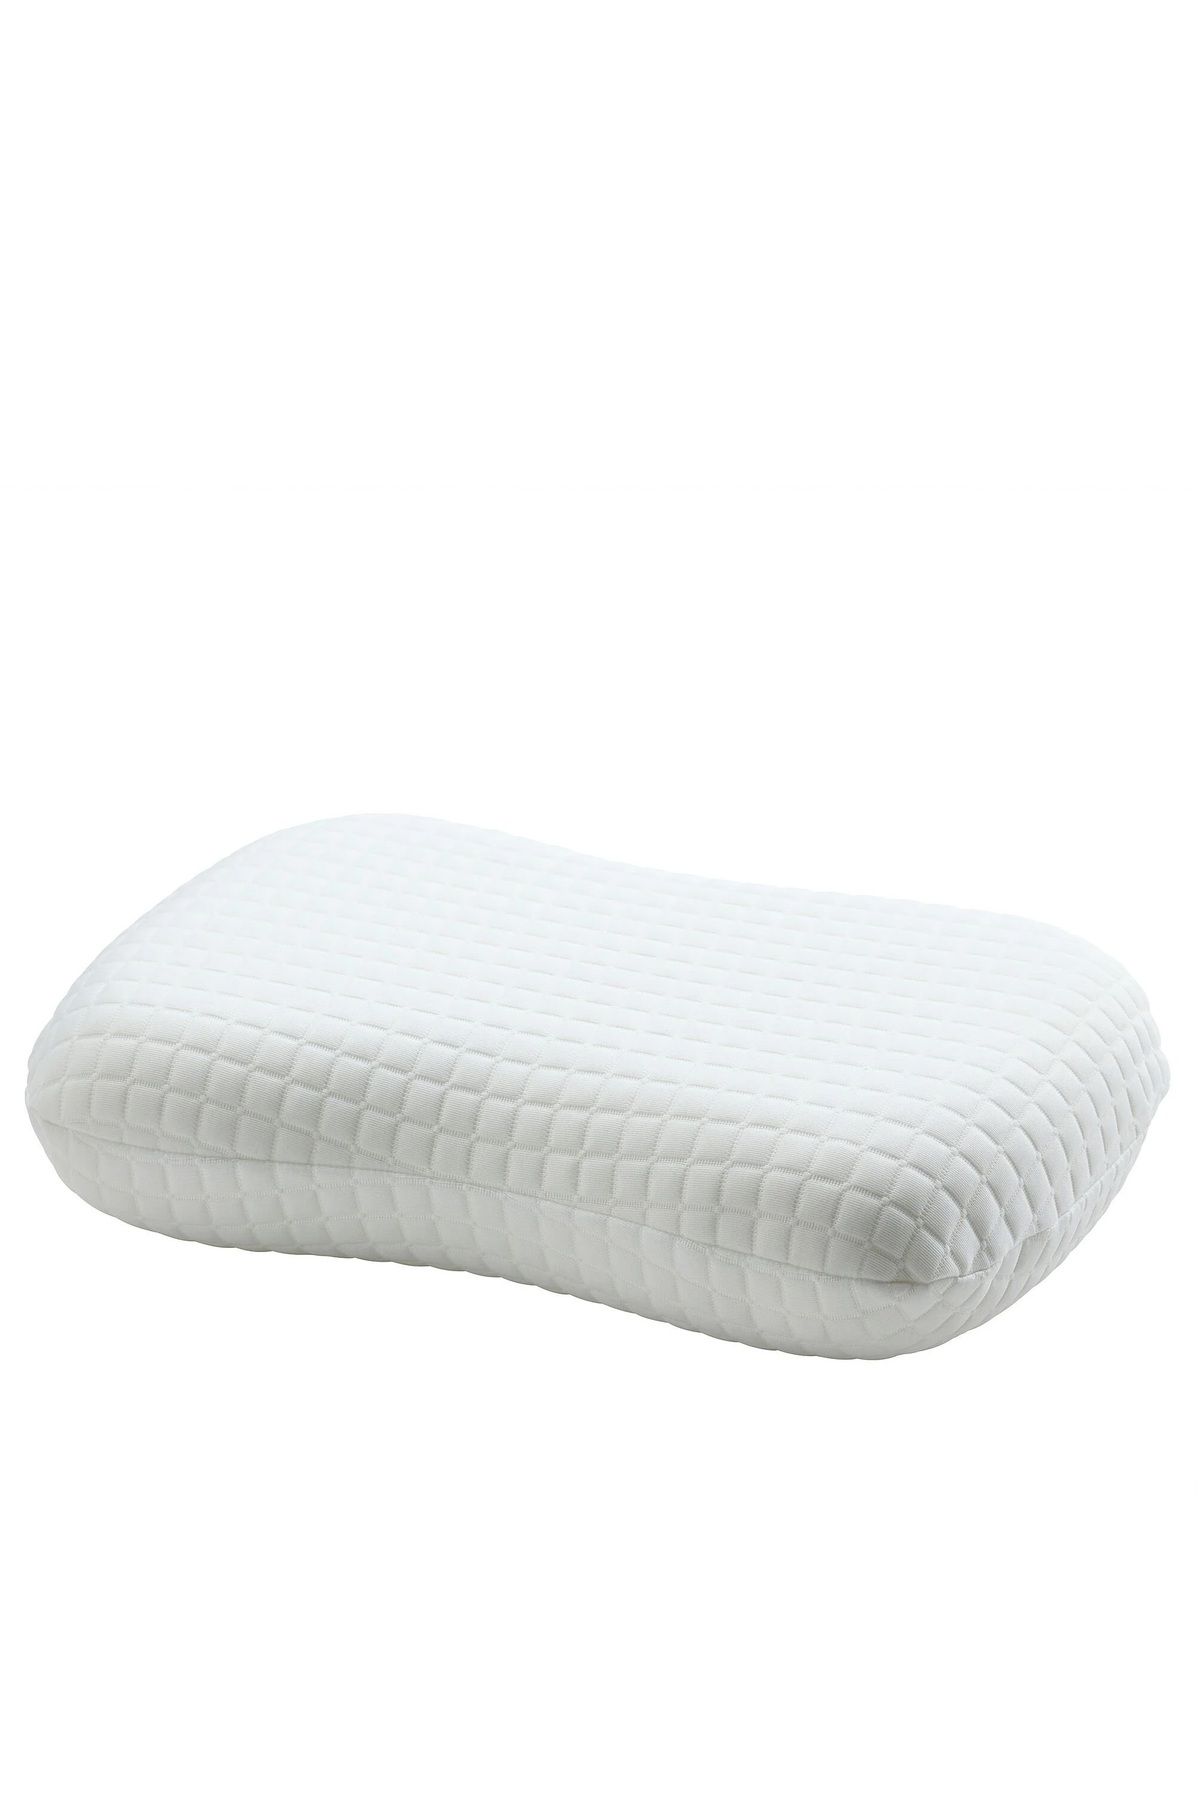 IKEA NORDSTALÖRT ergonomik yastık, beyaz, 35x50 cm, yan/sırt üstü uyuyanlar için